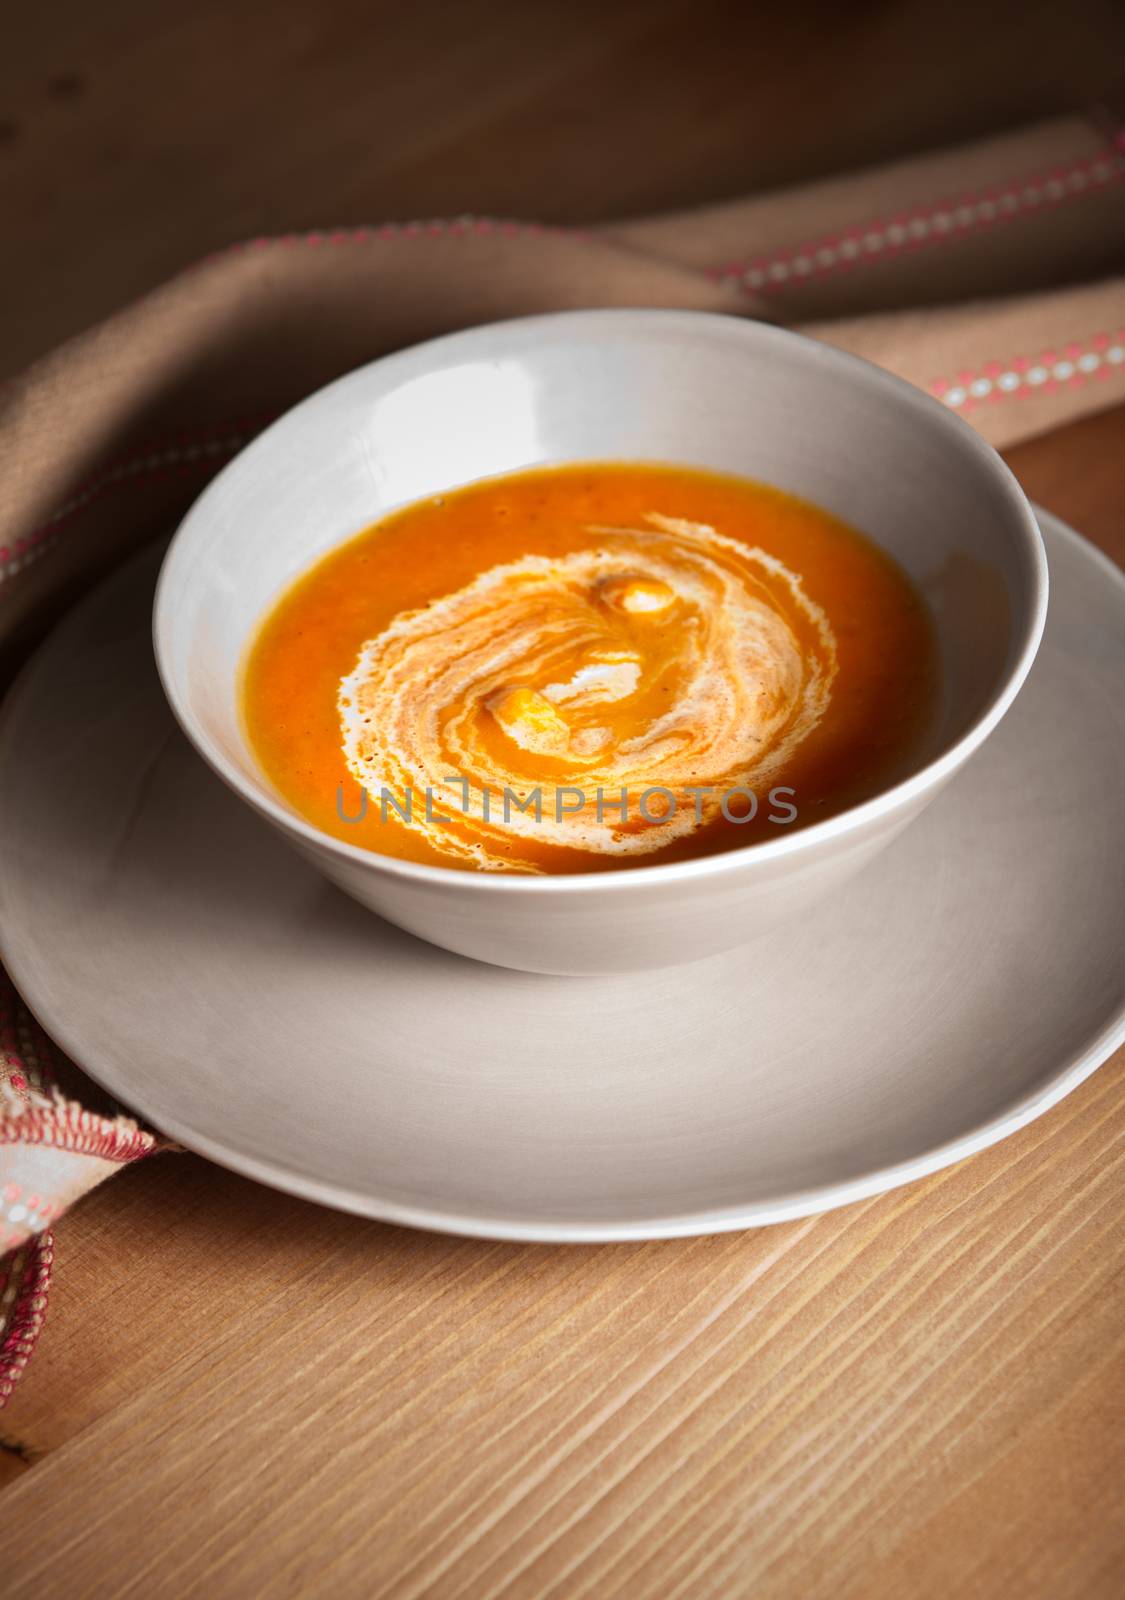 Pumpkin cream soup by supercat67